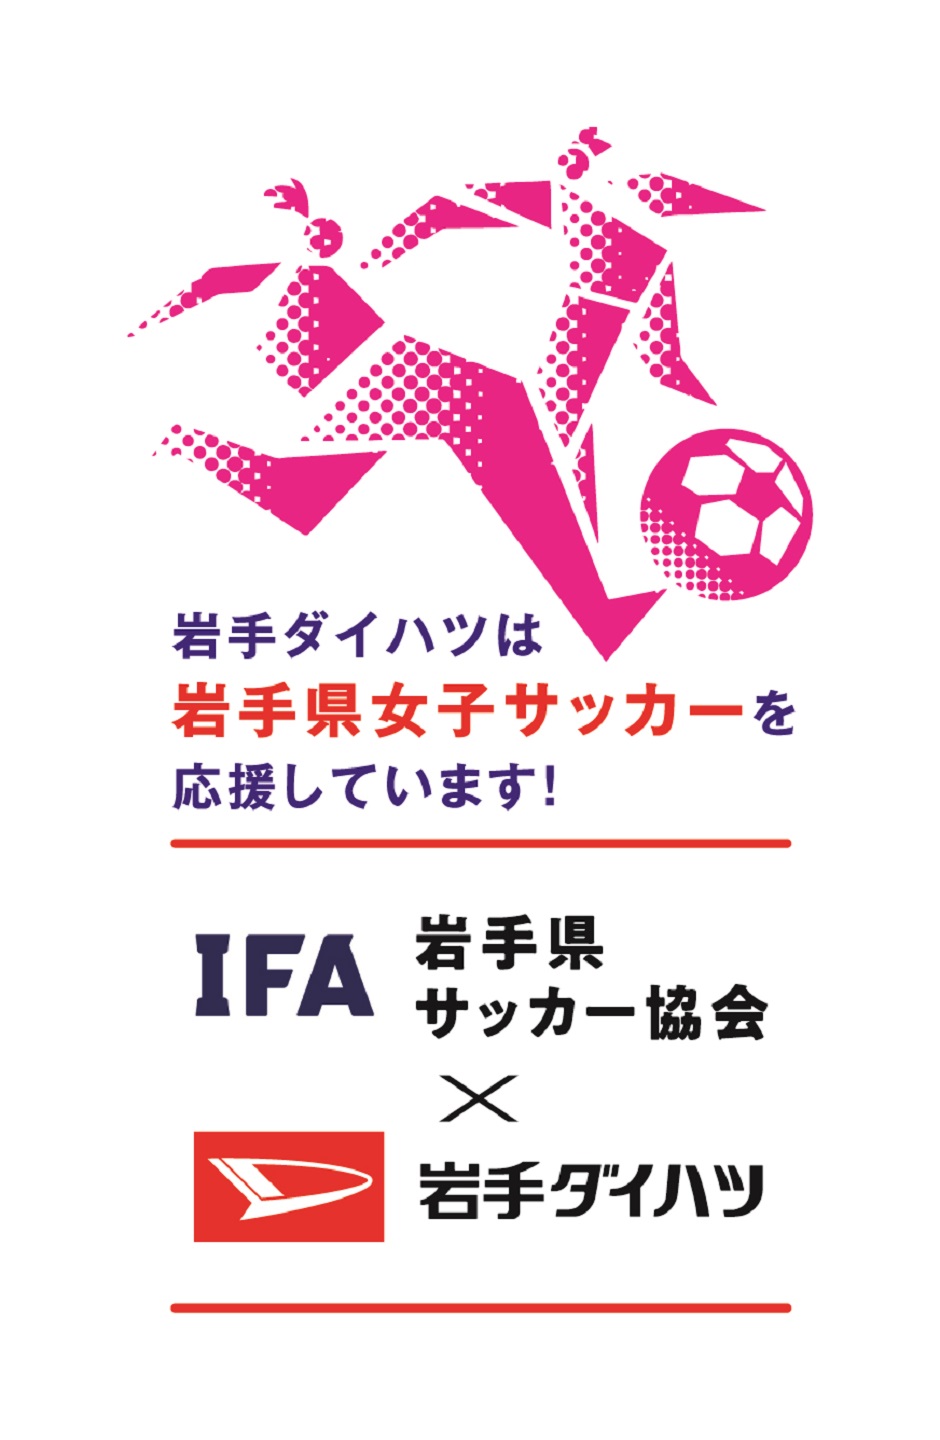 岩手ダイハツは岩手県女子サッカーを応援しています